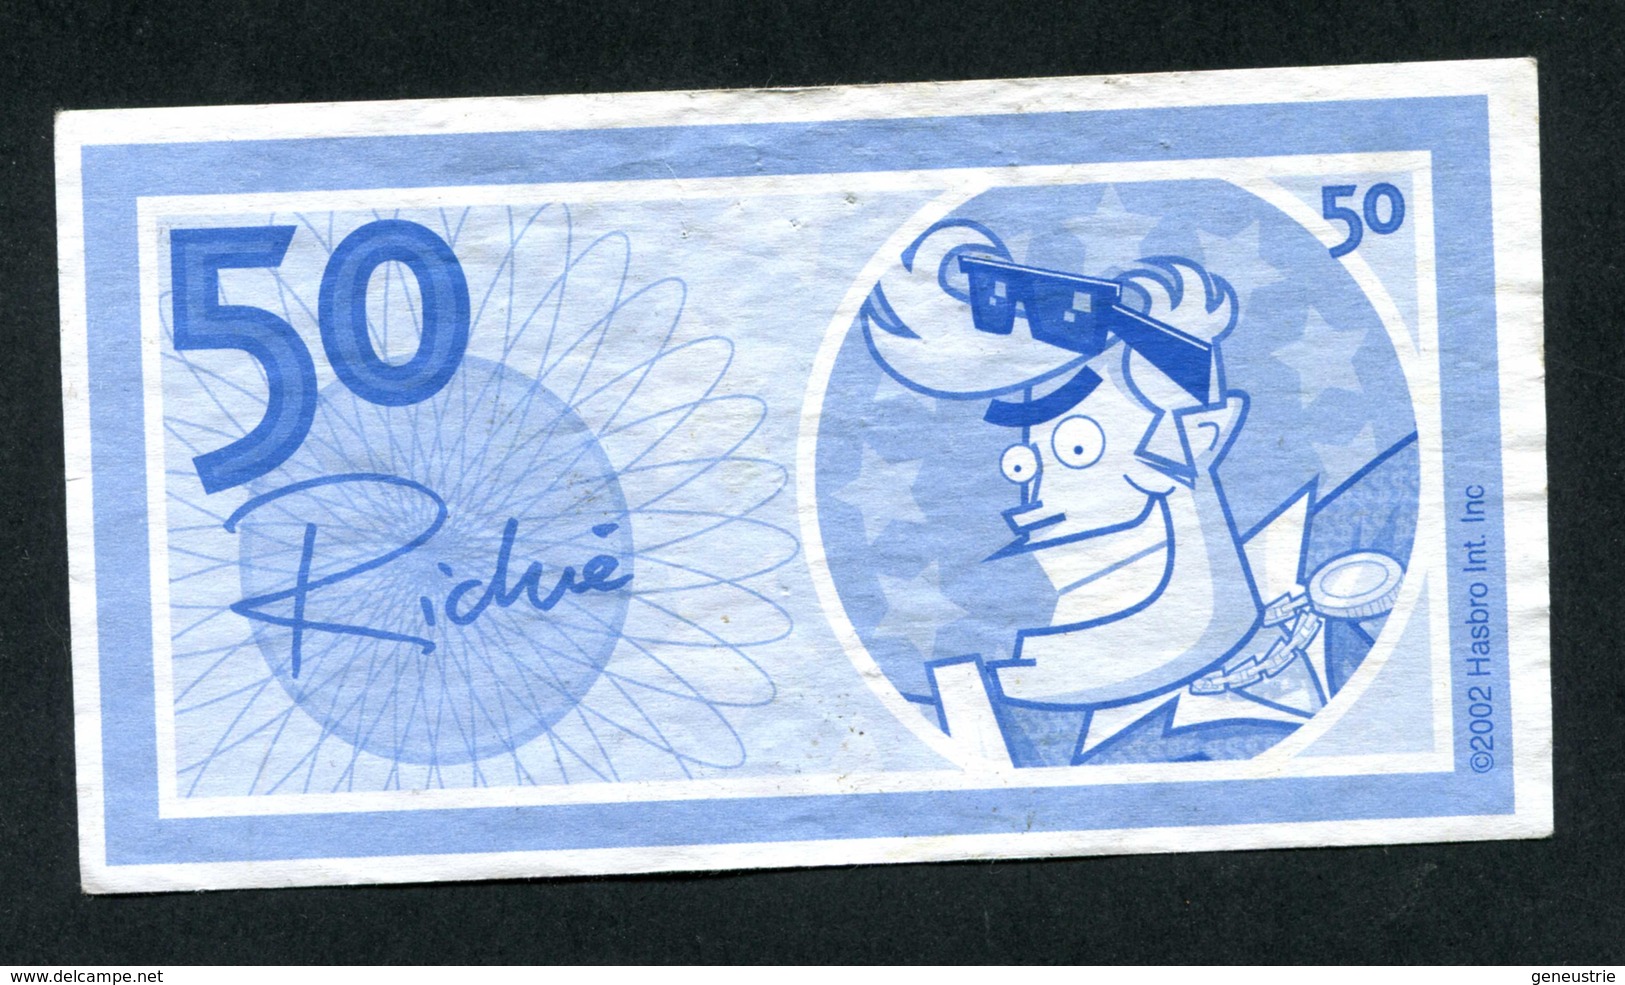 Billet De Banque Fantaisie (de Jeu ?) "50 / Richie" Banknote - Specimen